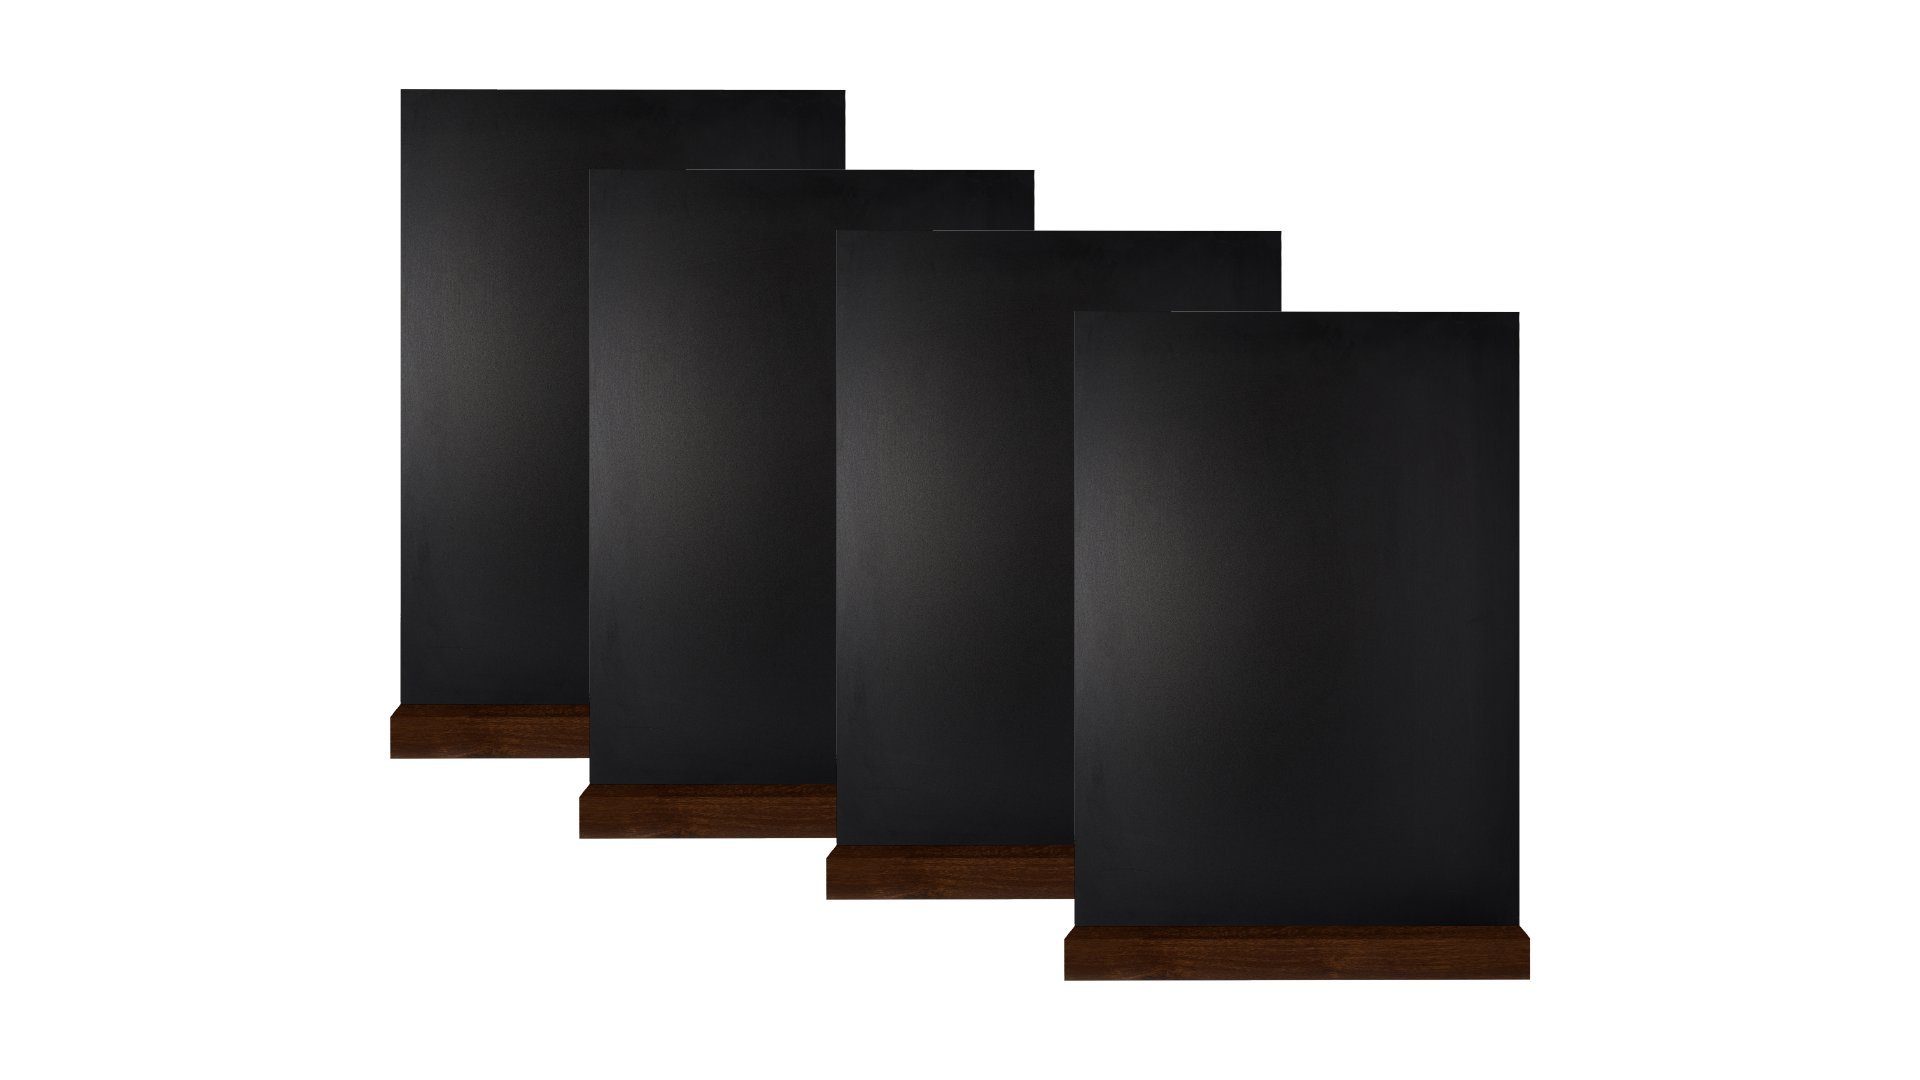 Tischaufsteller doppelseitige Memoboard Mini A6 Kleine Kreide ALLboards Tafeln